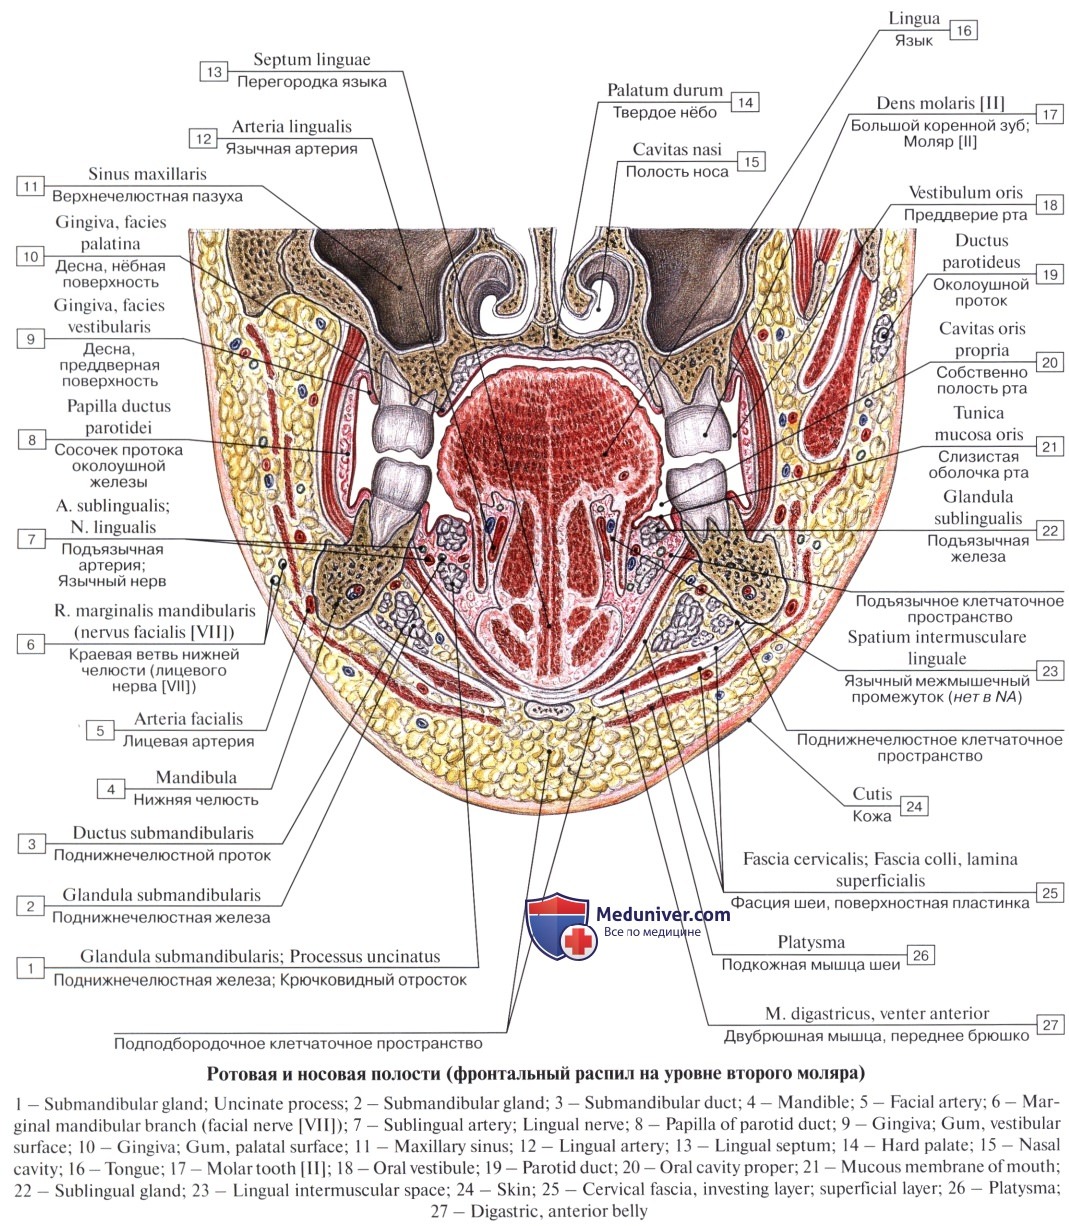 Пространства полости рта. Клетчаточное пространство дна полости рта. Топографическая анатомия клетчаточных пространств дна полости рта. Боковые клетчаточные пространства дна полости рта. Дно ротовой полости топографическая анатомия.